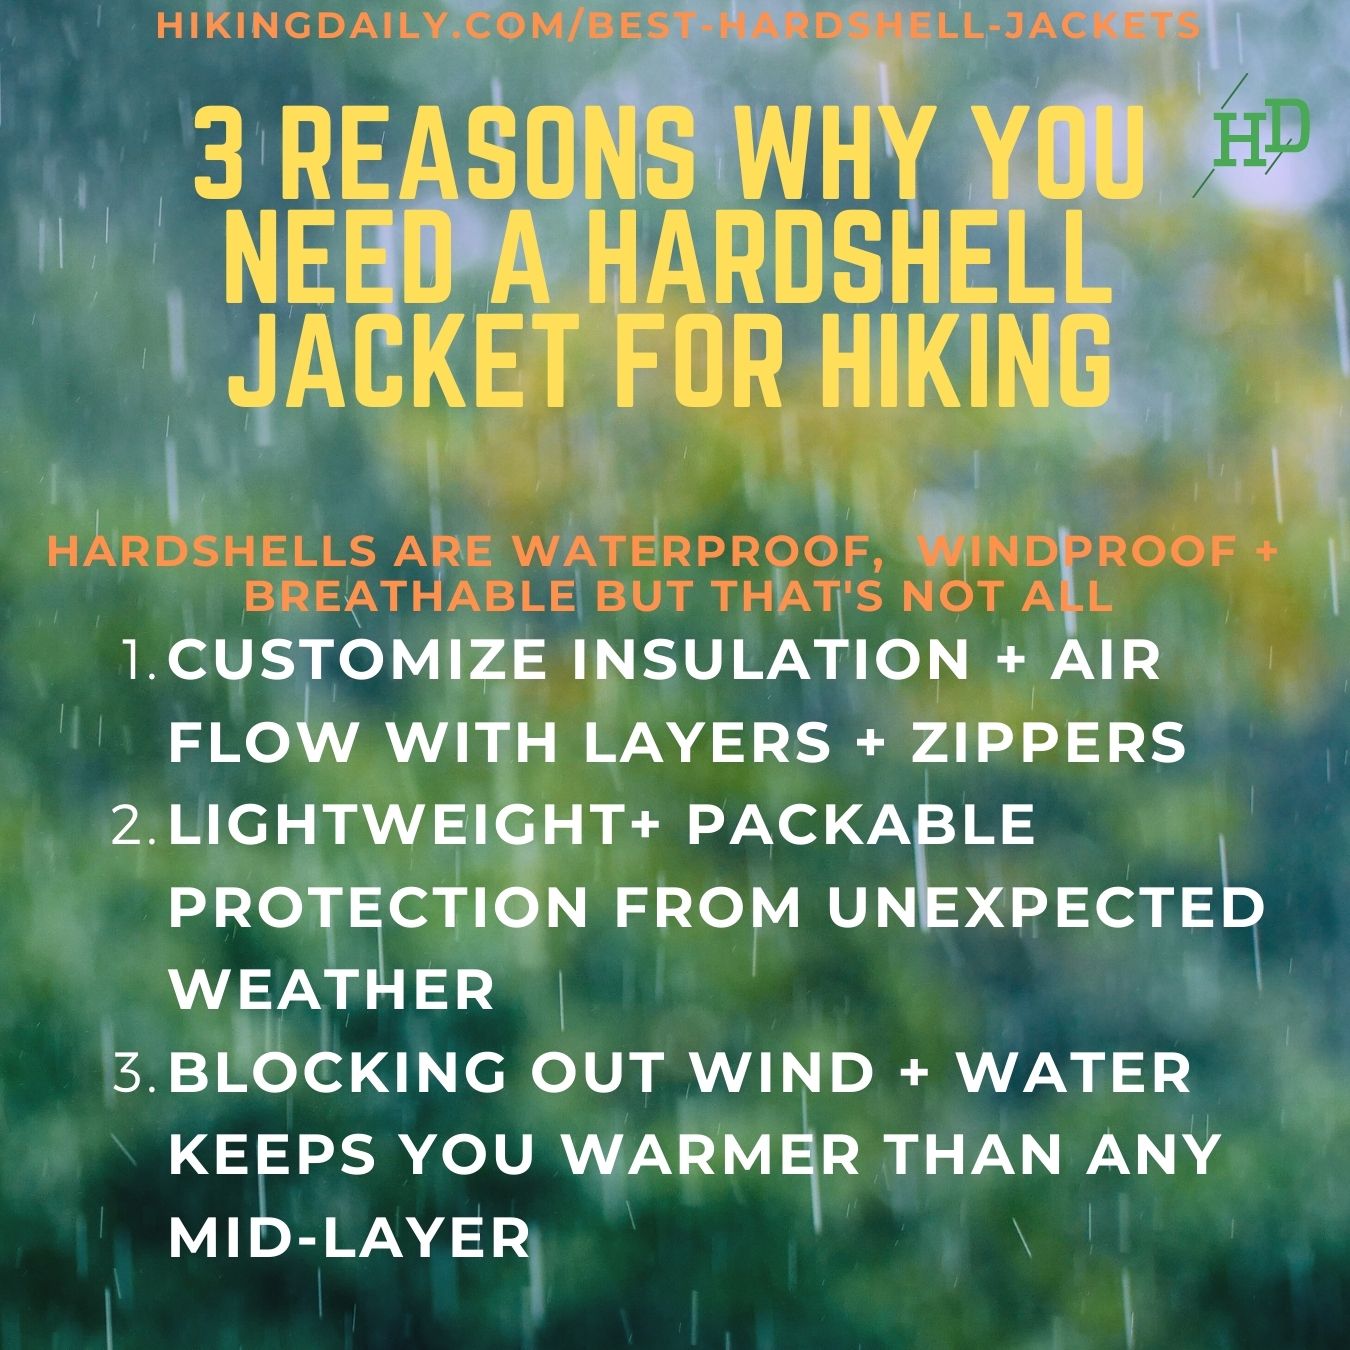 Do I need a hardshell jacket for hiking